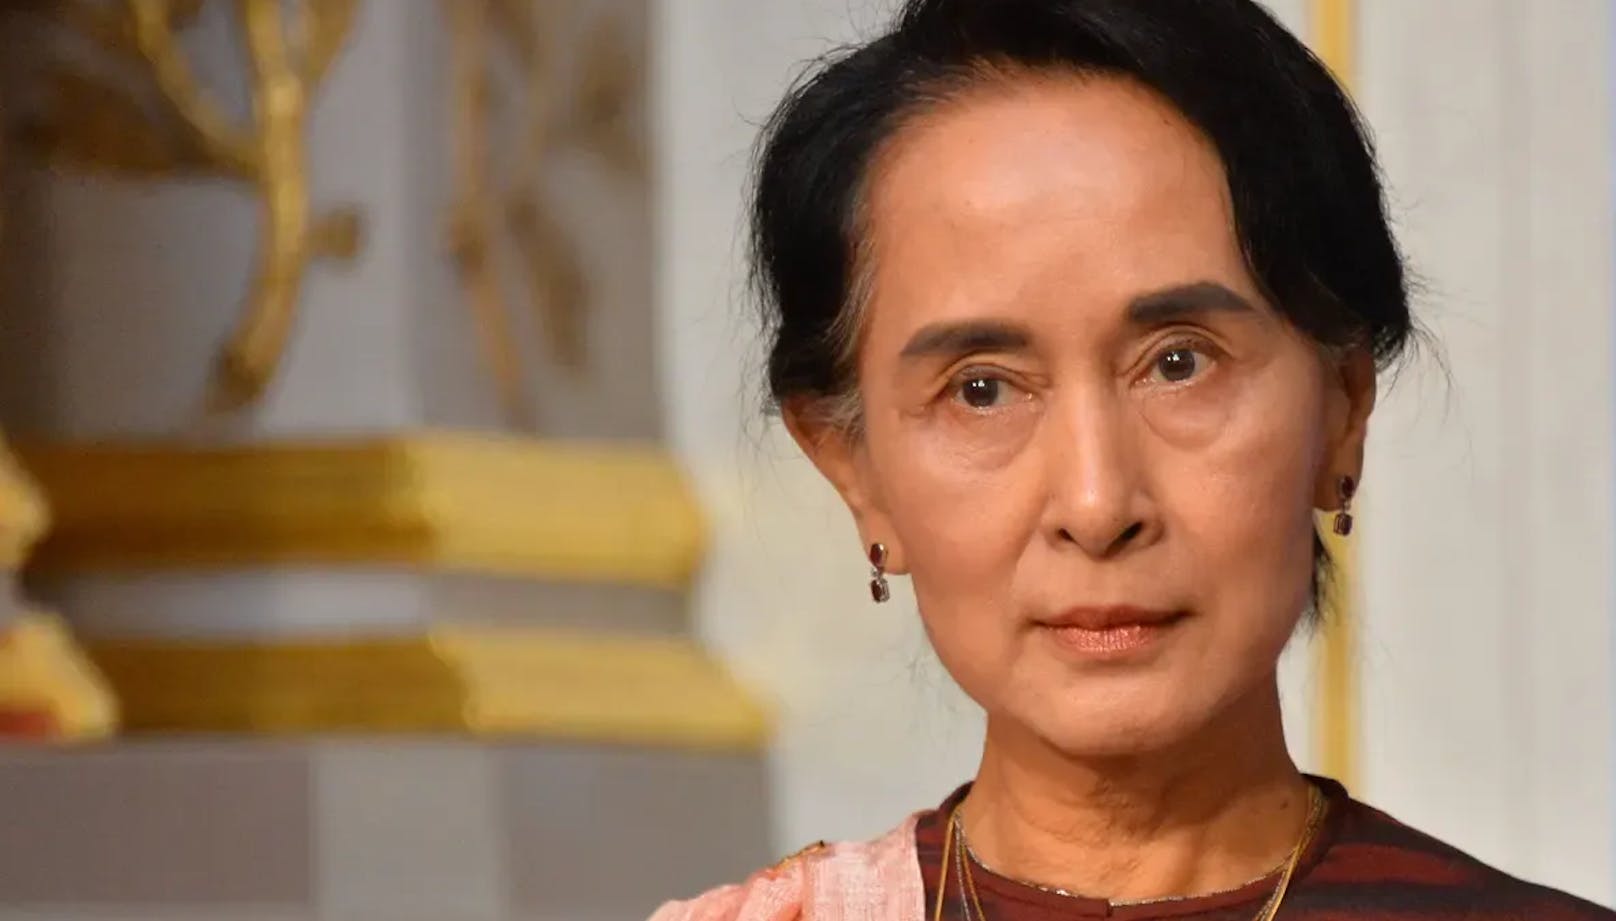 Friedensnobelpreisträgerin Aung San Suu Kyi wurde nach dem Militärputsch 2021 in 19 Fällen verurteilt.